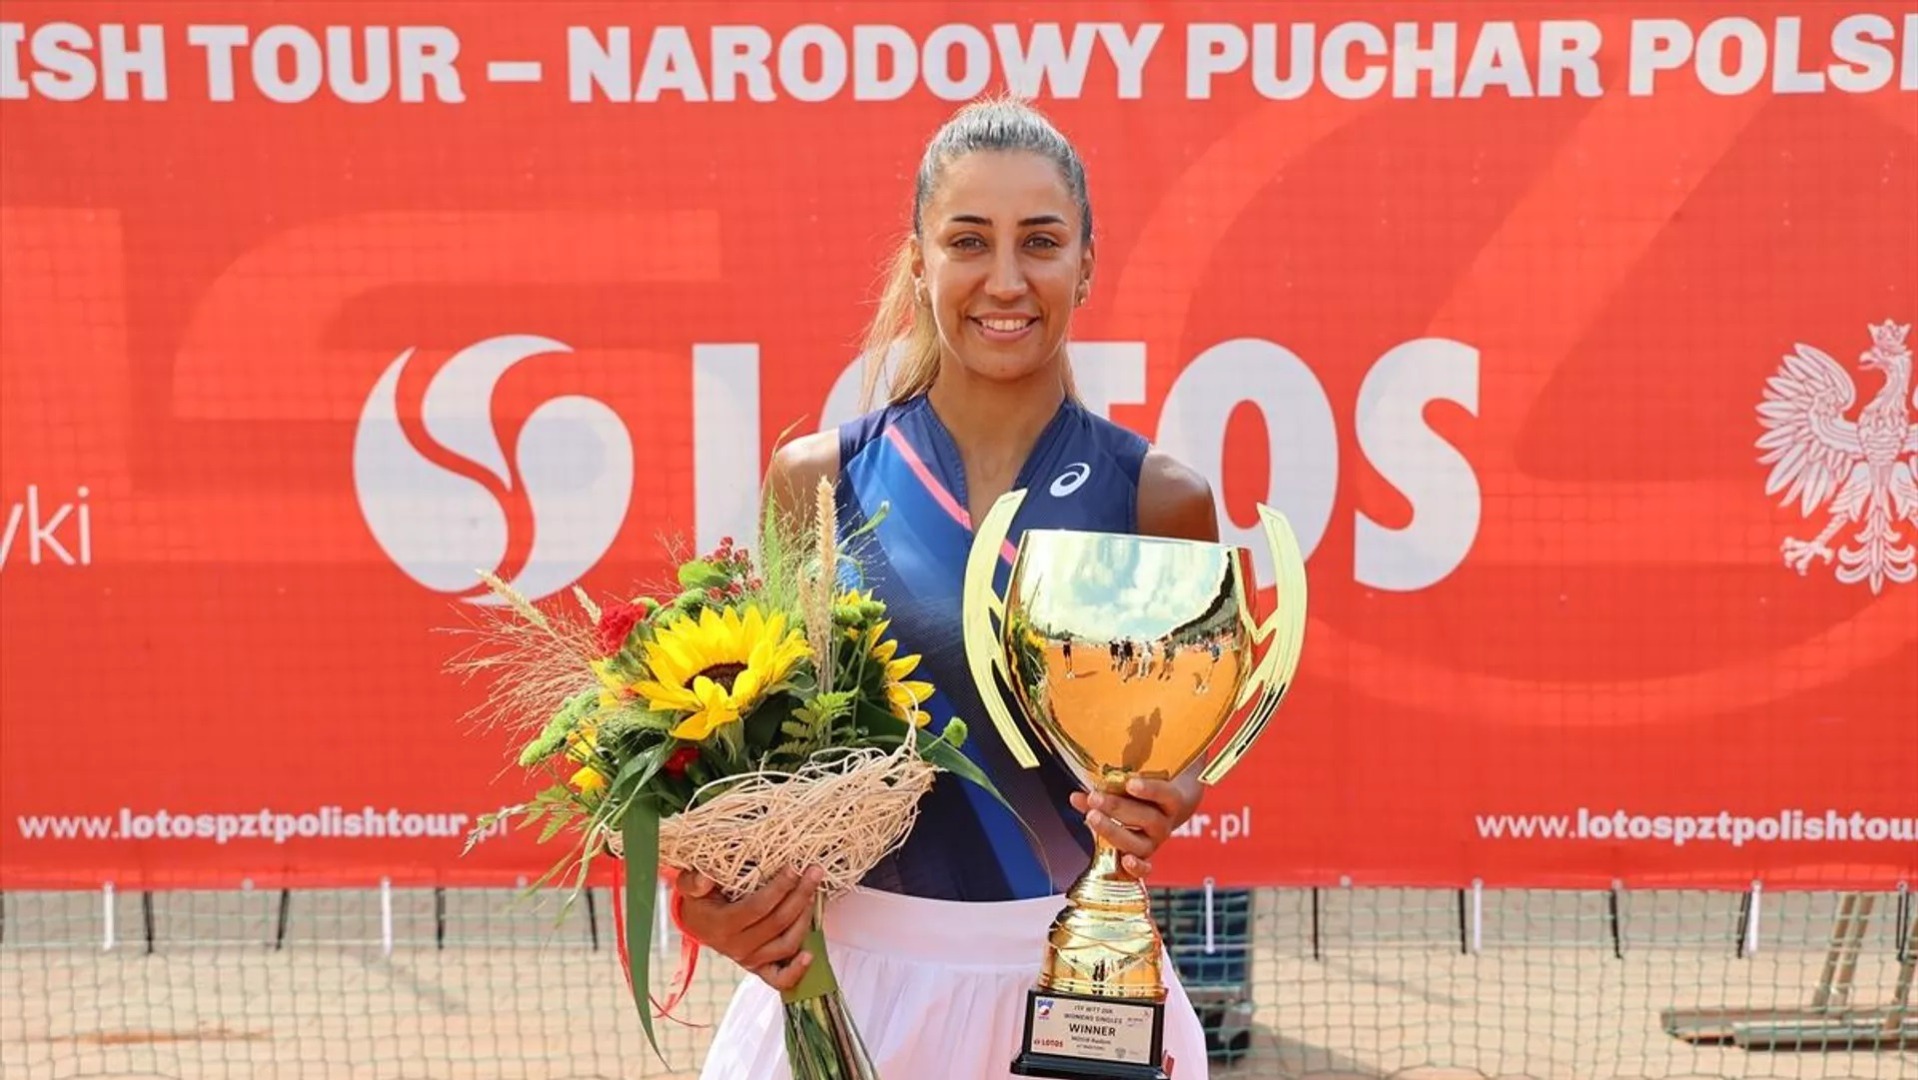 Milli tenisçi Çağla Büyükakçay, Polonya'da şampiyon oldu